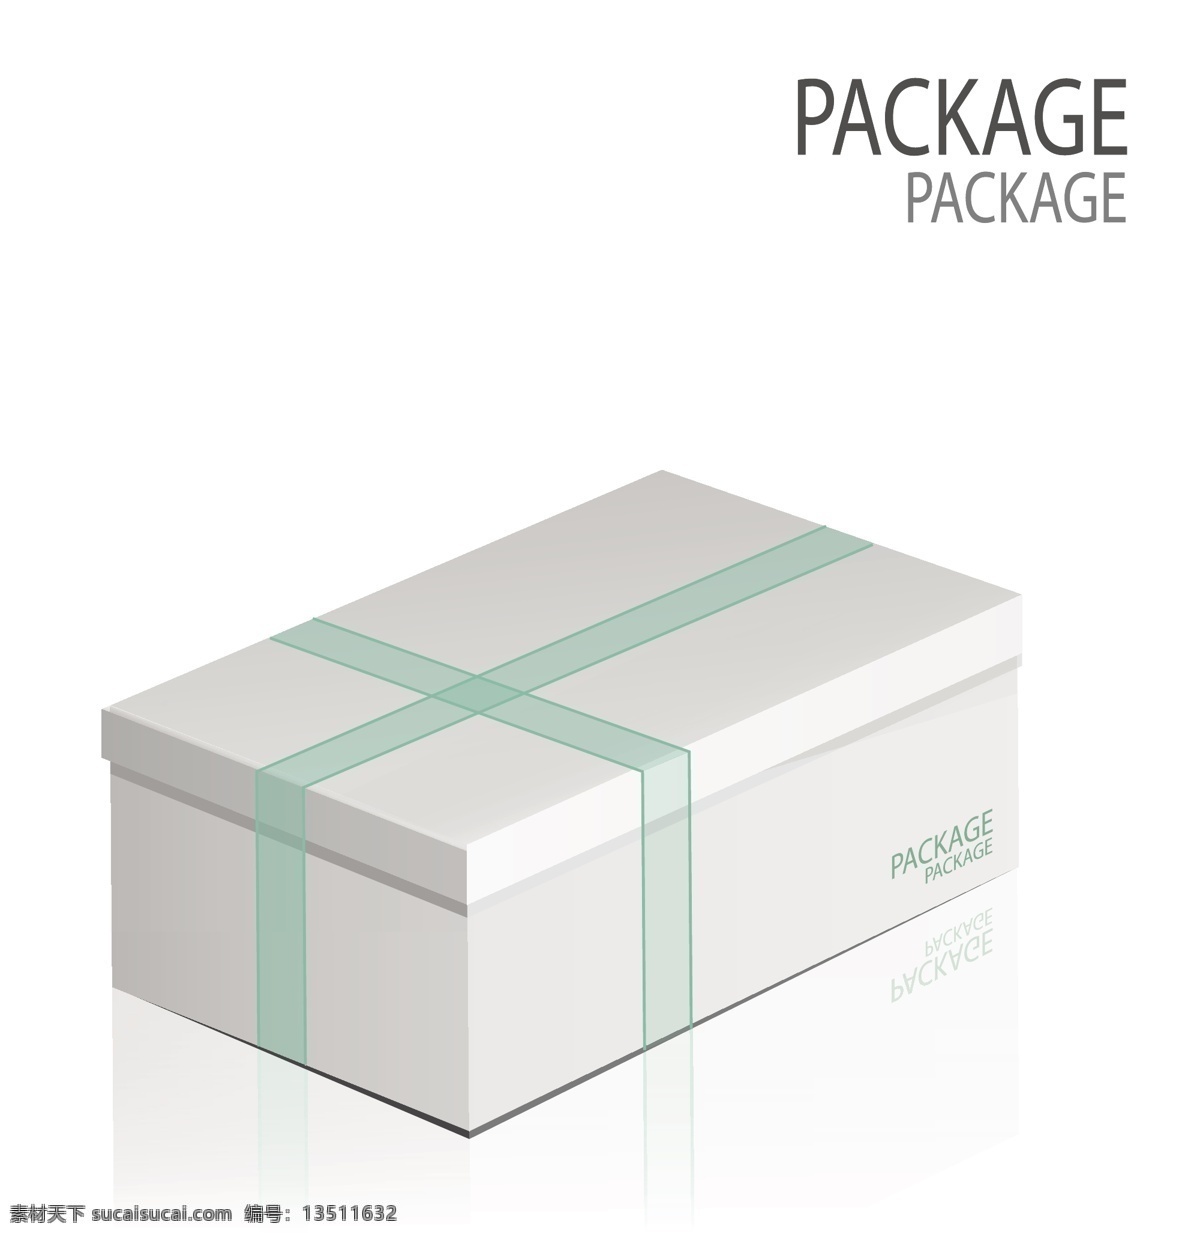 绿色 丝带 包装盒 设计素材 文字 时尚 高清 源文件 盒子 设计元素 广告装饰图案